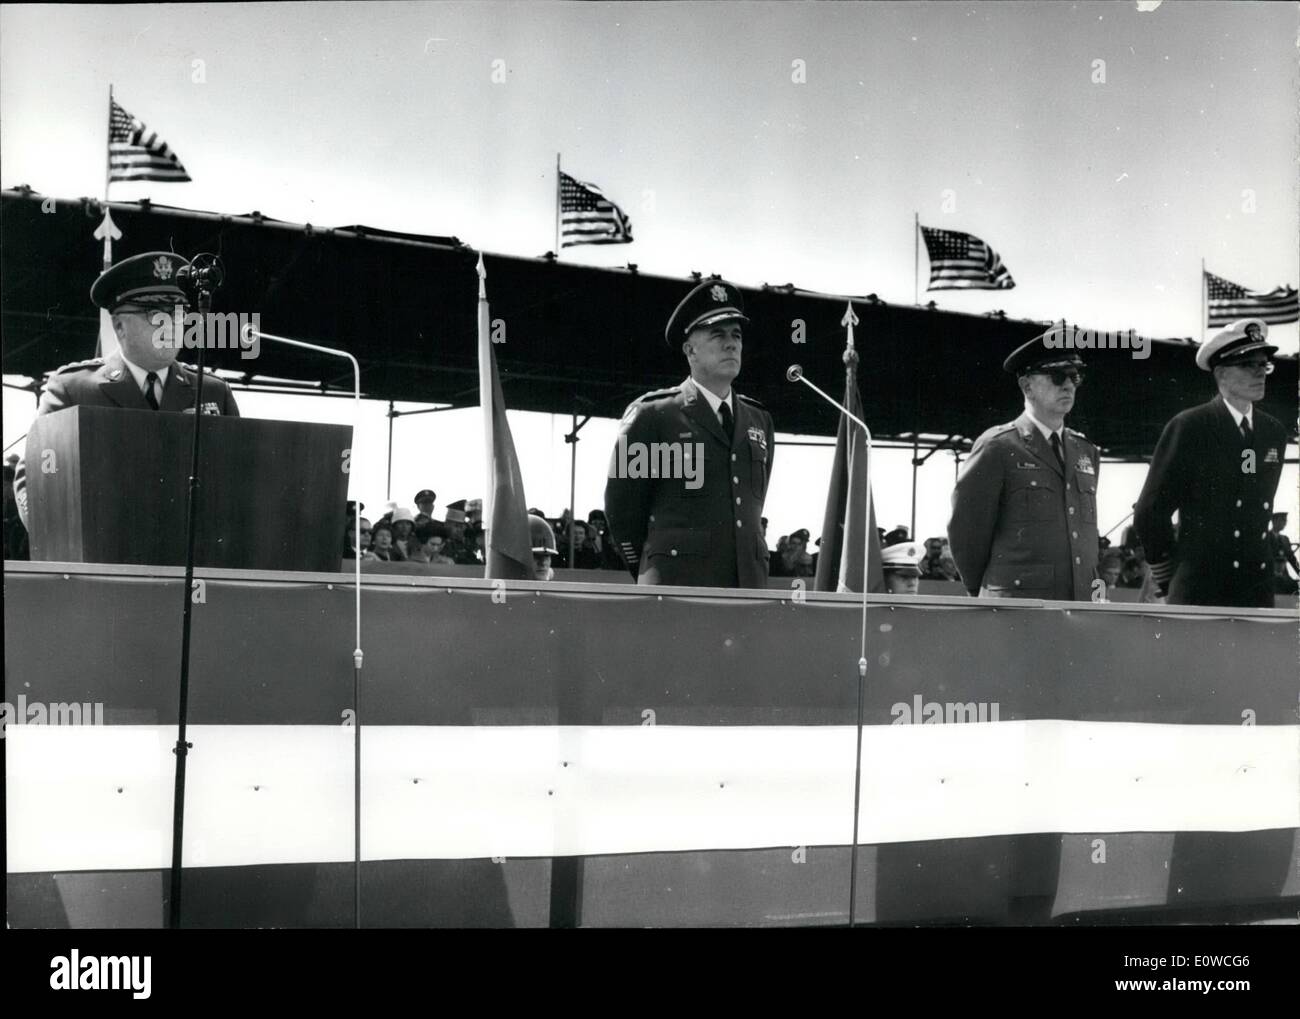 Mai 05, 1962 - Journée de l'Armée américaine à Berlin : avec le général George H. Decker (George H. Decker), chef d'état-major de l'armée américaine, prévue pour le discours principal, la Journée des Forces armées pour les troupes américaines s'est ouverte aujourd'hui (19.5.1962) avec un défilé militaire à l'aéroport central de Tempelhof. La photo montre le Général George H. Decker, Commandement du secteur nous Général Albert Watson, le Brigadier Général Oran O. Prix, Directeur adjoint de Cabinet de génie civil de l'US Air Force, l'Europe et le Capitaine John Thro, attaché naval de l'ambassade américaine à Bonn. Banque D'Images